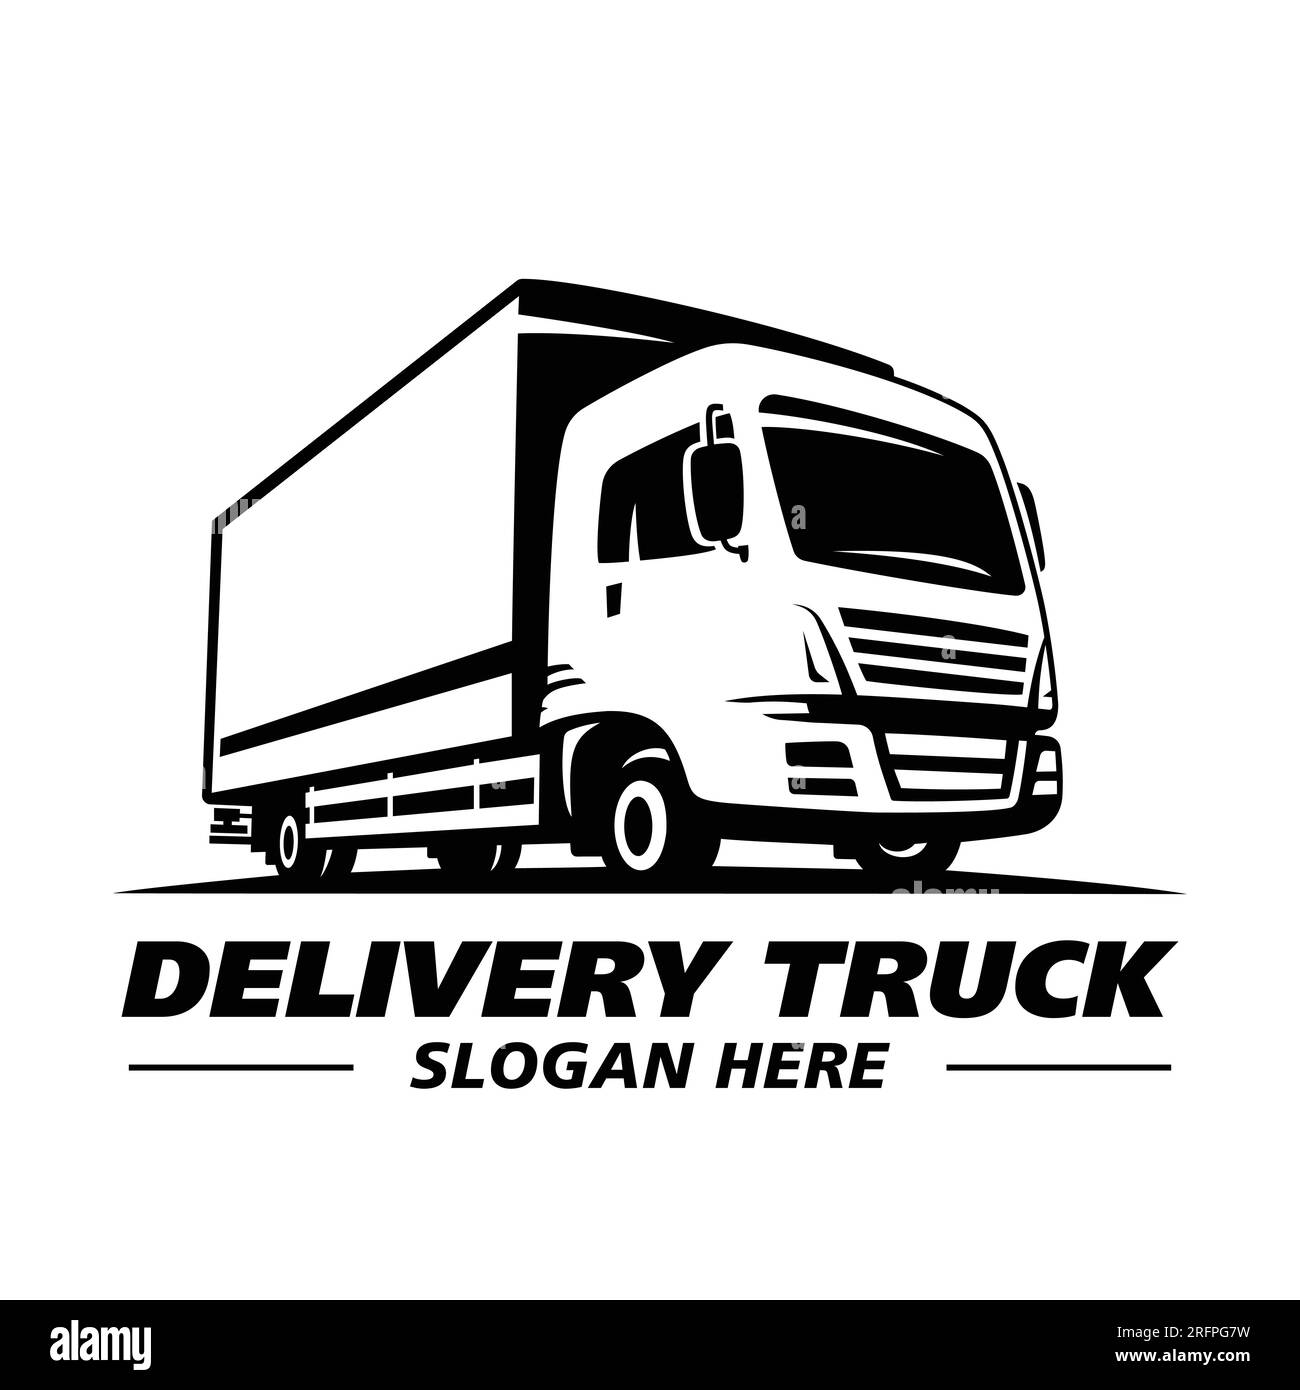 Logo Truck, logo Cargo, camion cargo per consegne, logo Logistic. Vettore e illustrazione. Illustrazione Vettoriale